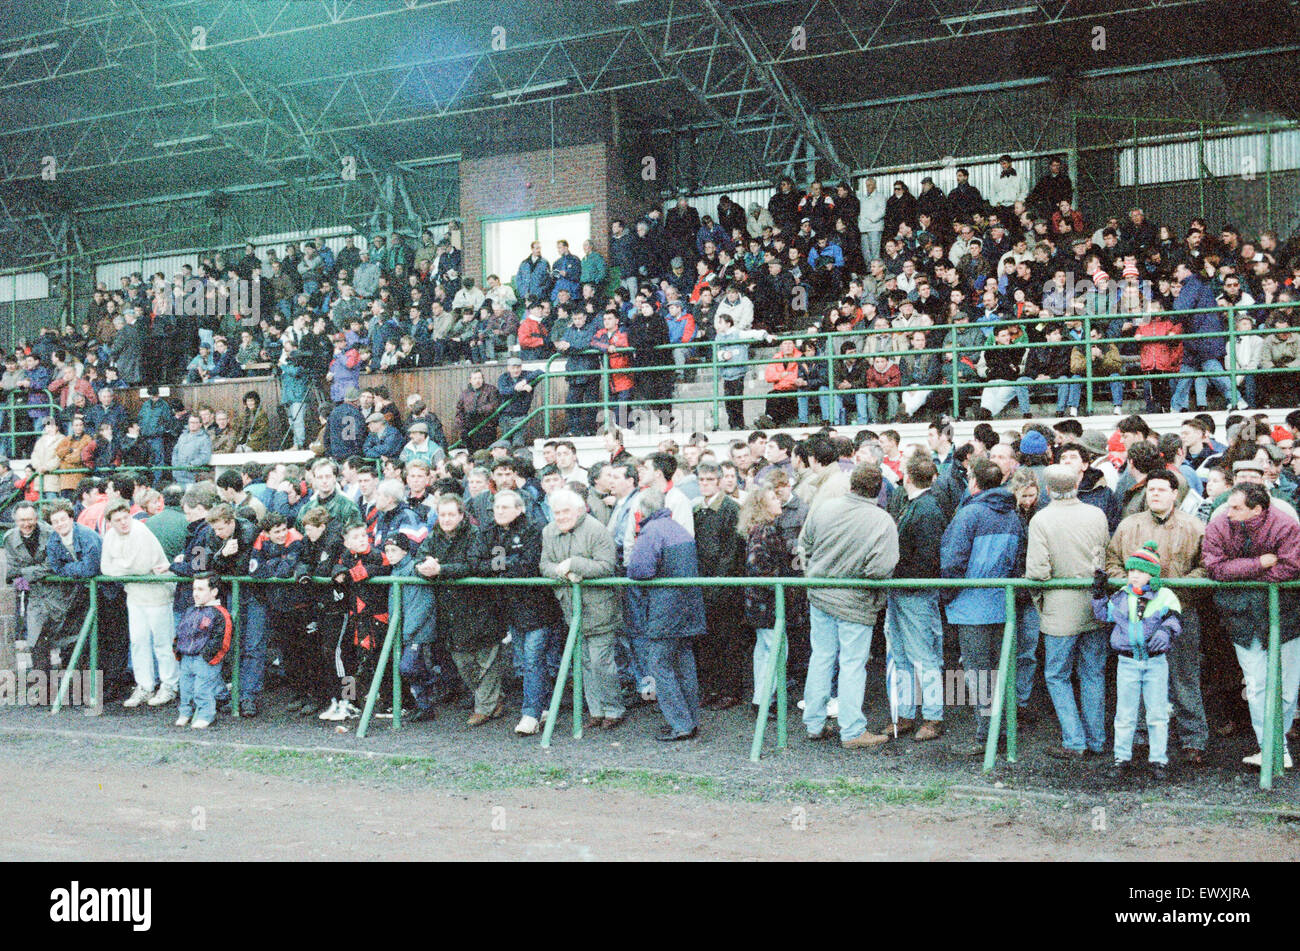 Billingham Synthonia 1-2 Woking, FA Trofeo, quarti di finale replay, Central Avenue Stadium, Billingham, 30 marzo 1994. Woking ha vinto 3-2 sull'aggregato. Foto Stock